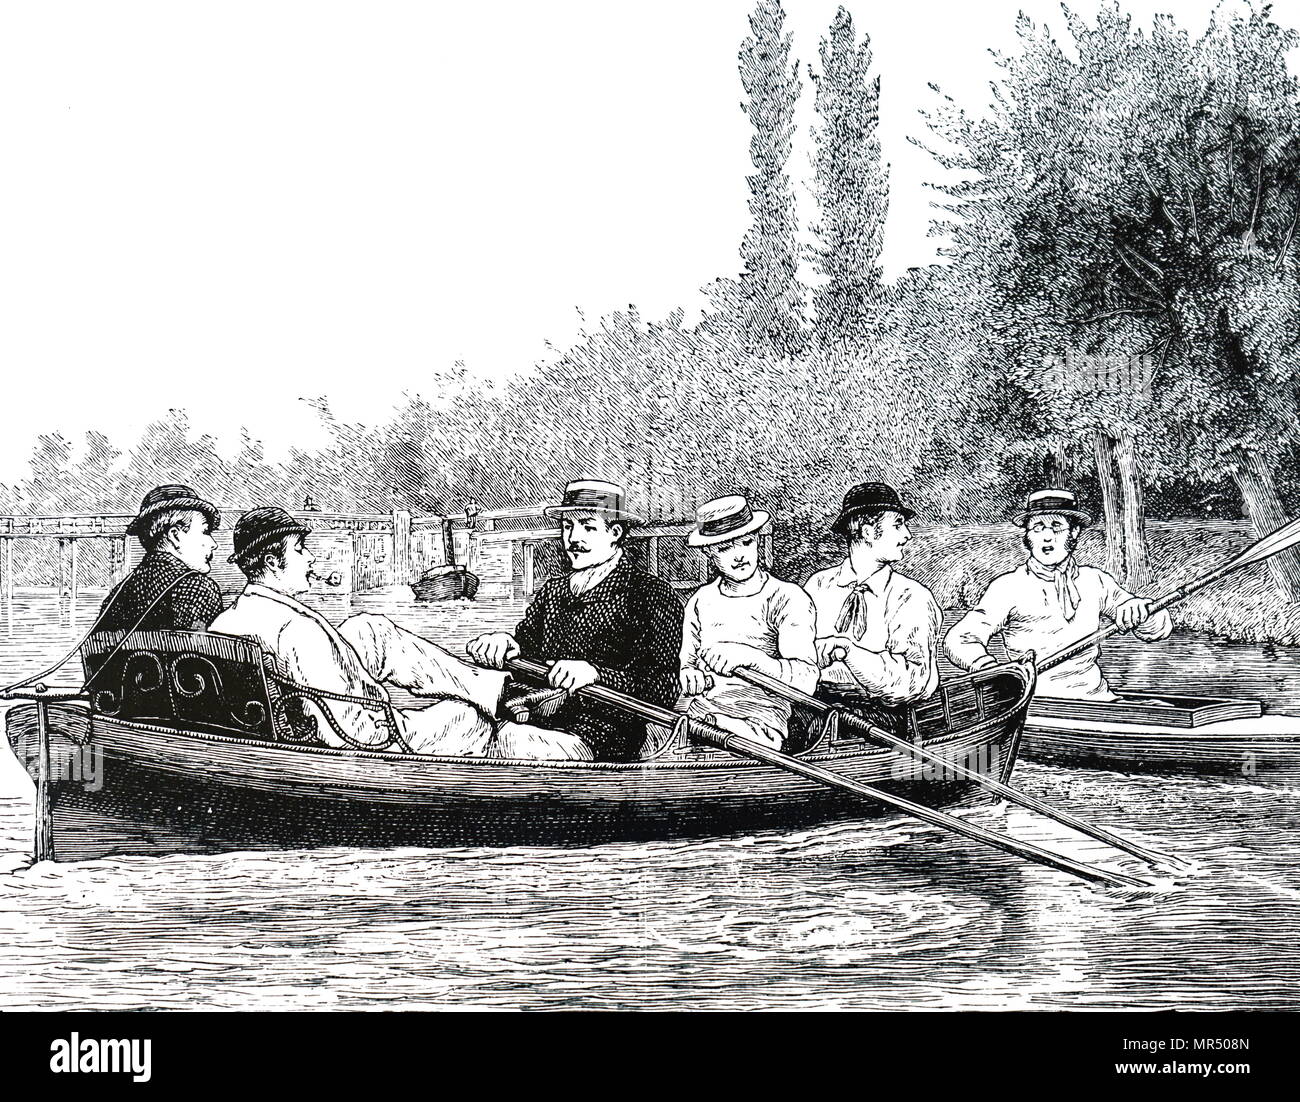 Abbildung: Darstellung der Universität Oxford Studenten Rudern auf dem Iffley River. Vom 19. Jahrhundert Stockfoto